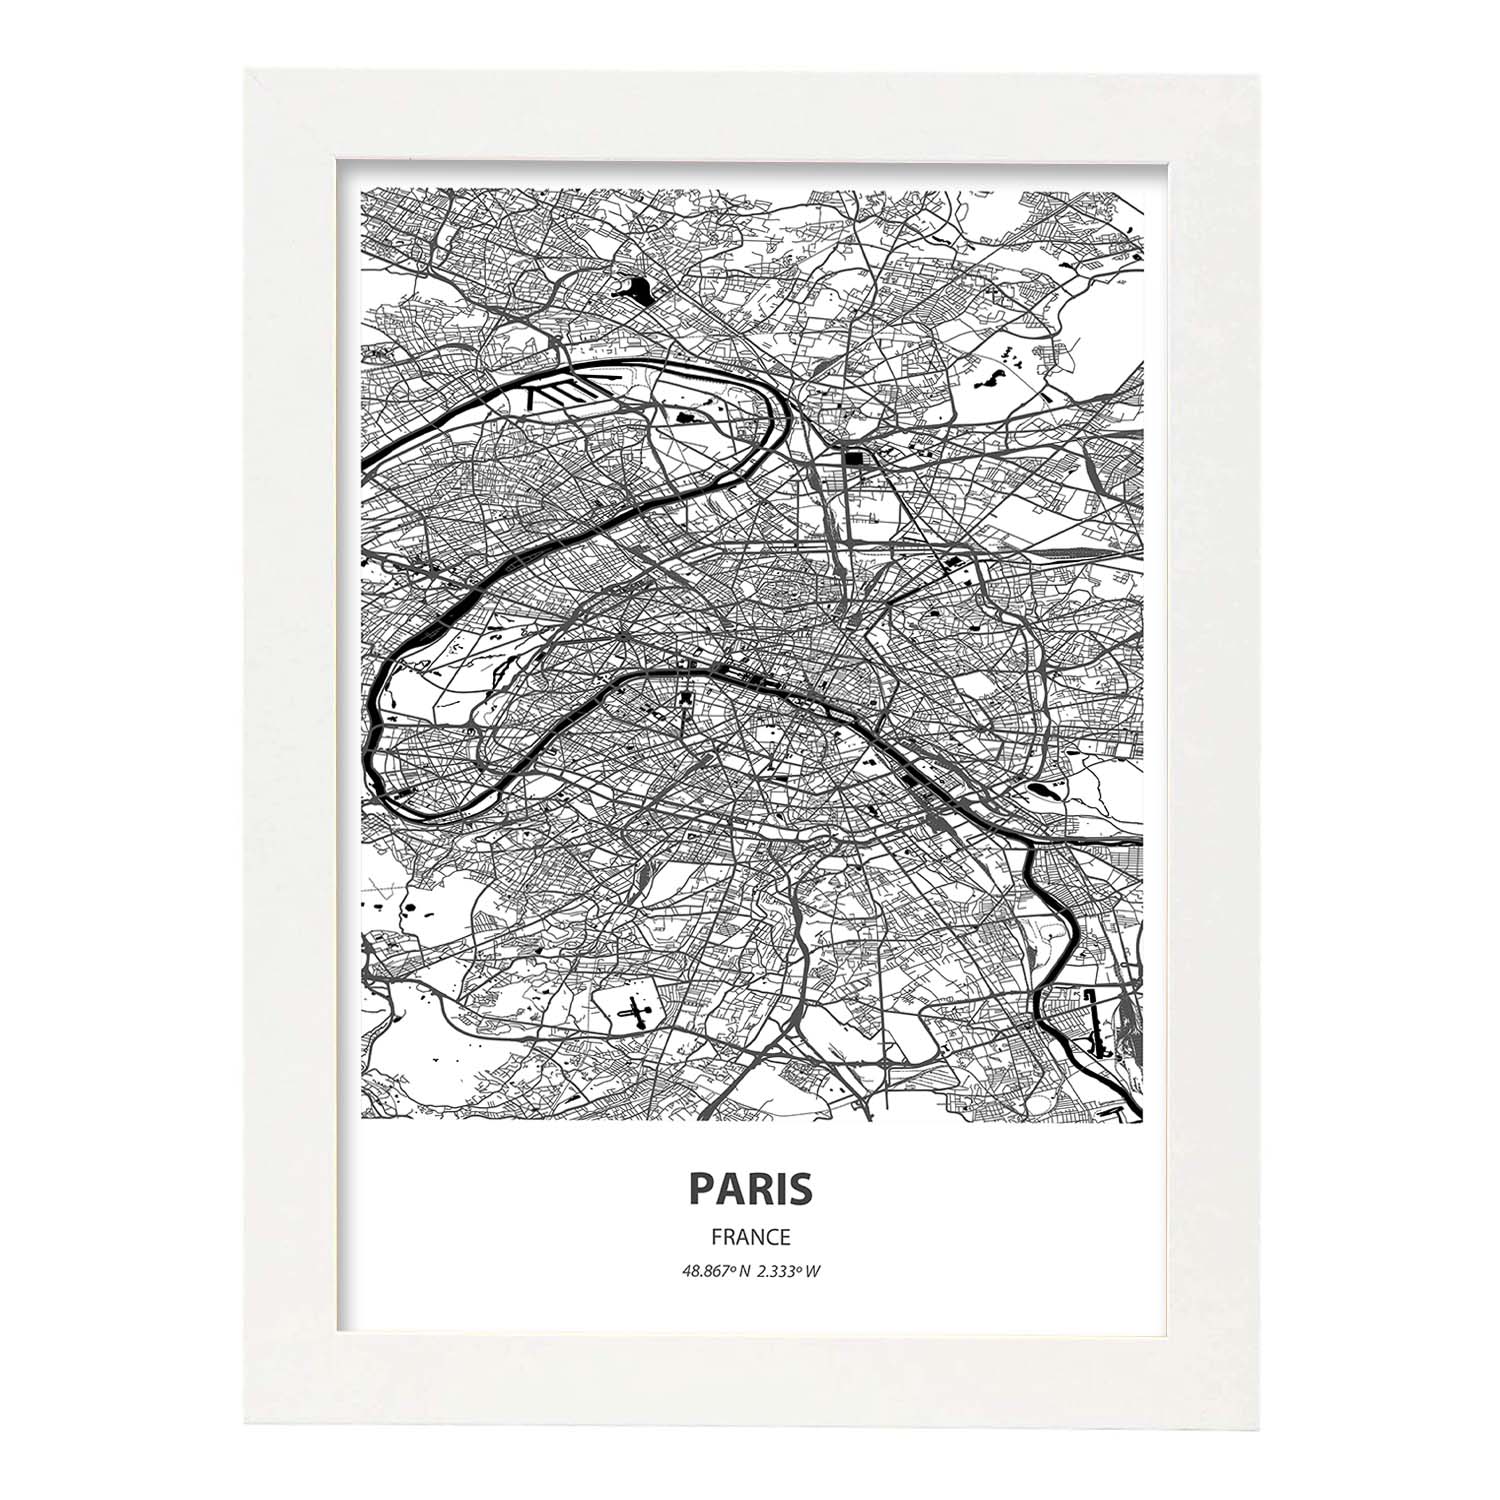 Poster con mapa de Paris - Francia. Láminas de ciudades de Francia con mares y ríos en color negro.-Artwork-Nacnic-A4-Marco Blanco-Nacnic Estudio SL